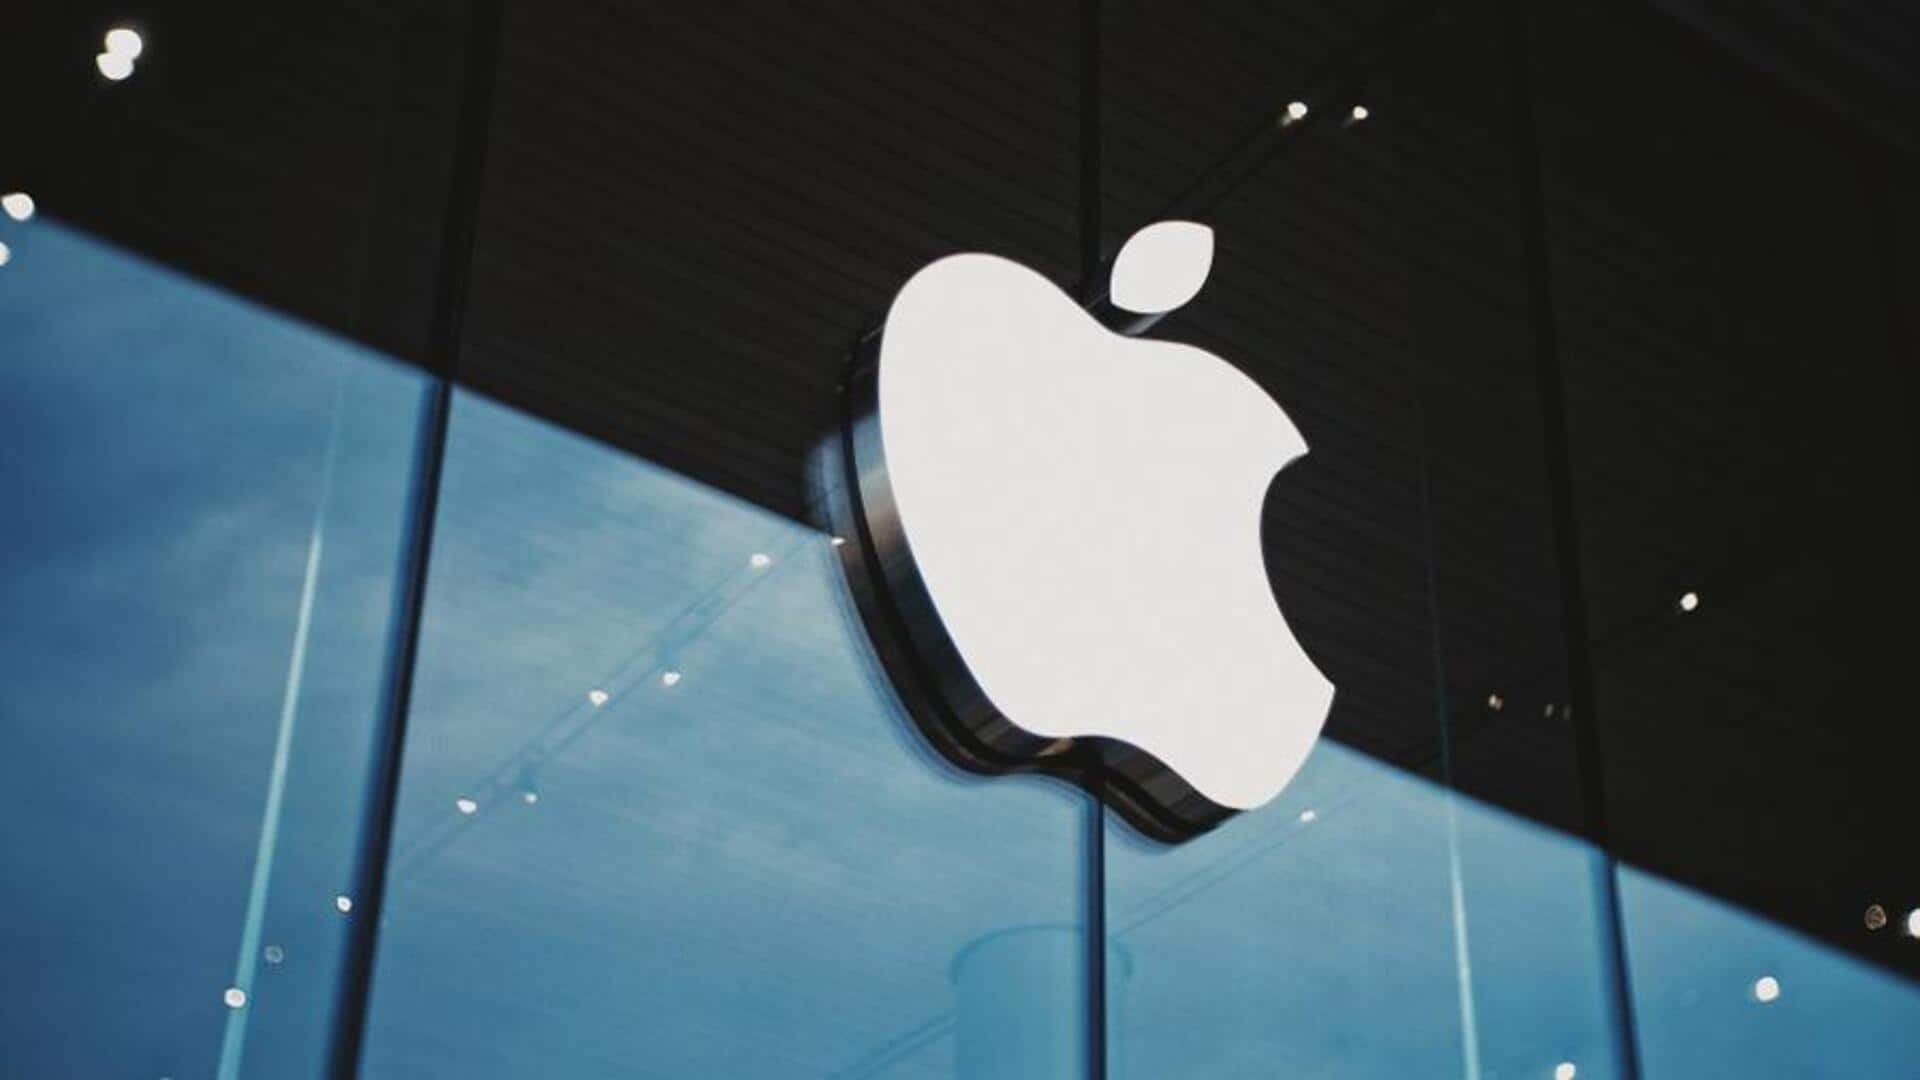 CERT-In investigates iPhone hacking alert issue; notice sent to Apple 